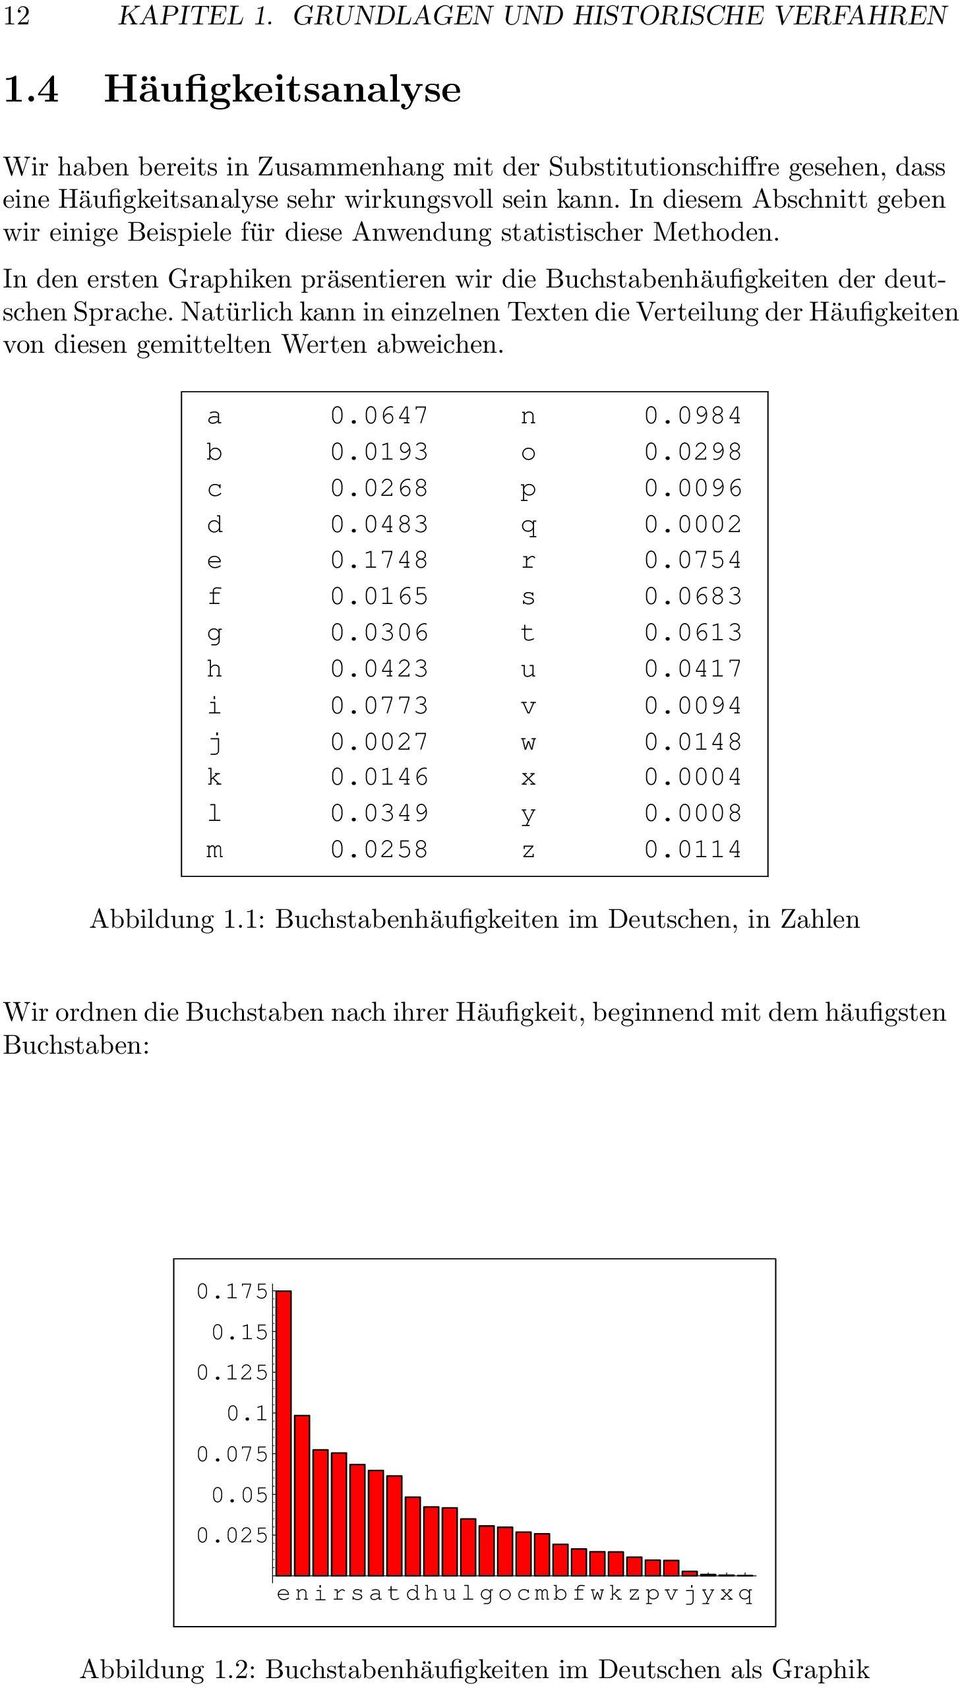 In diesem Abschnitt geben wir einige Beispiele für diese Anwendung statistischer Methoden. In den ersten Graphiken präsentieren wir die Buchstabenhäufigkeiten der deutschen Sprache.